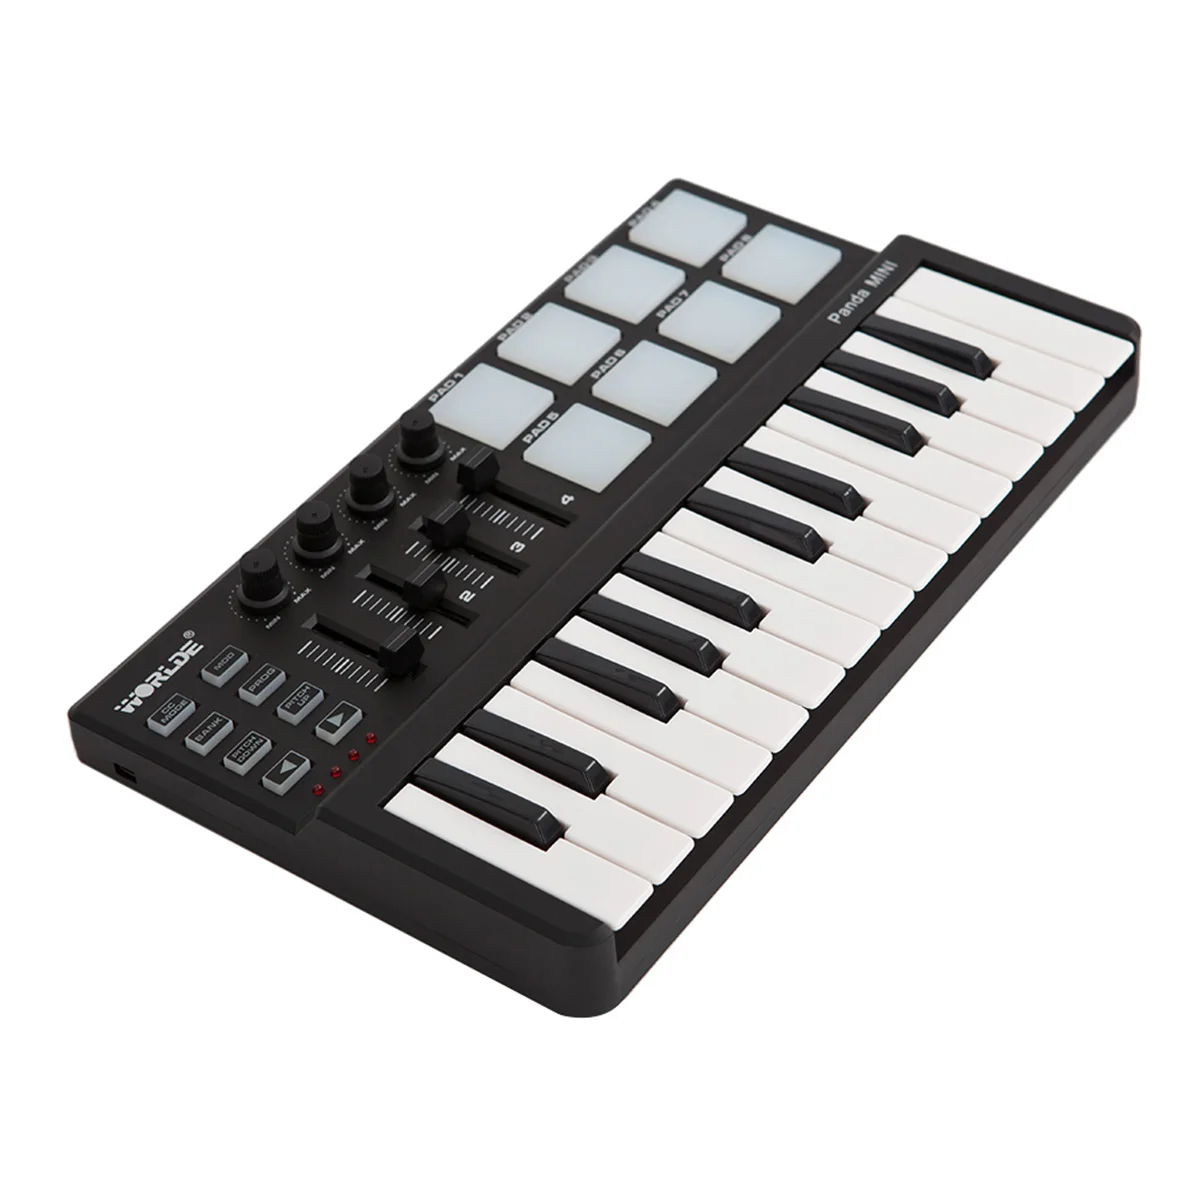 Worlde Panda mini Mini Portatīvo 25-Key), USB Tastatūras un Drum Pad MIDI Kontrolieris Profesionālās Mūzikas Instrumenti, Melna Krāsa